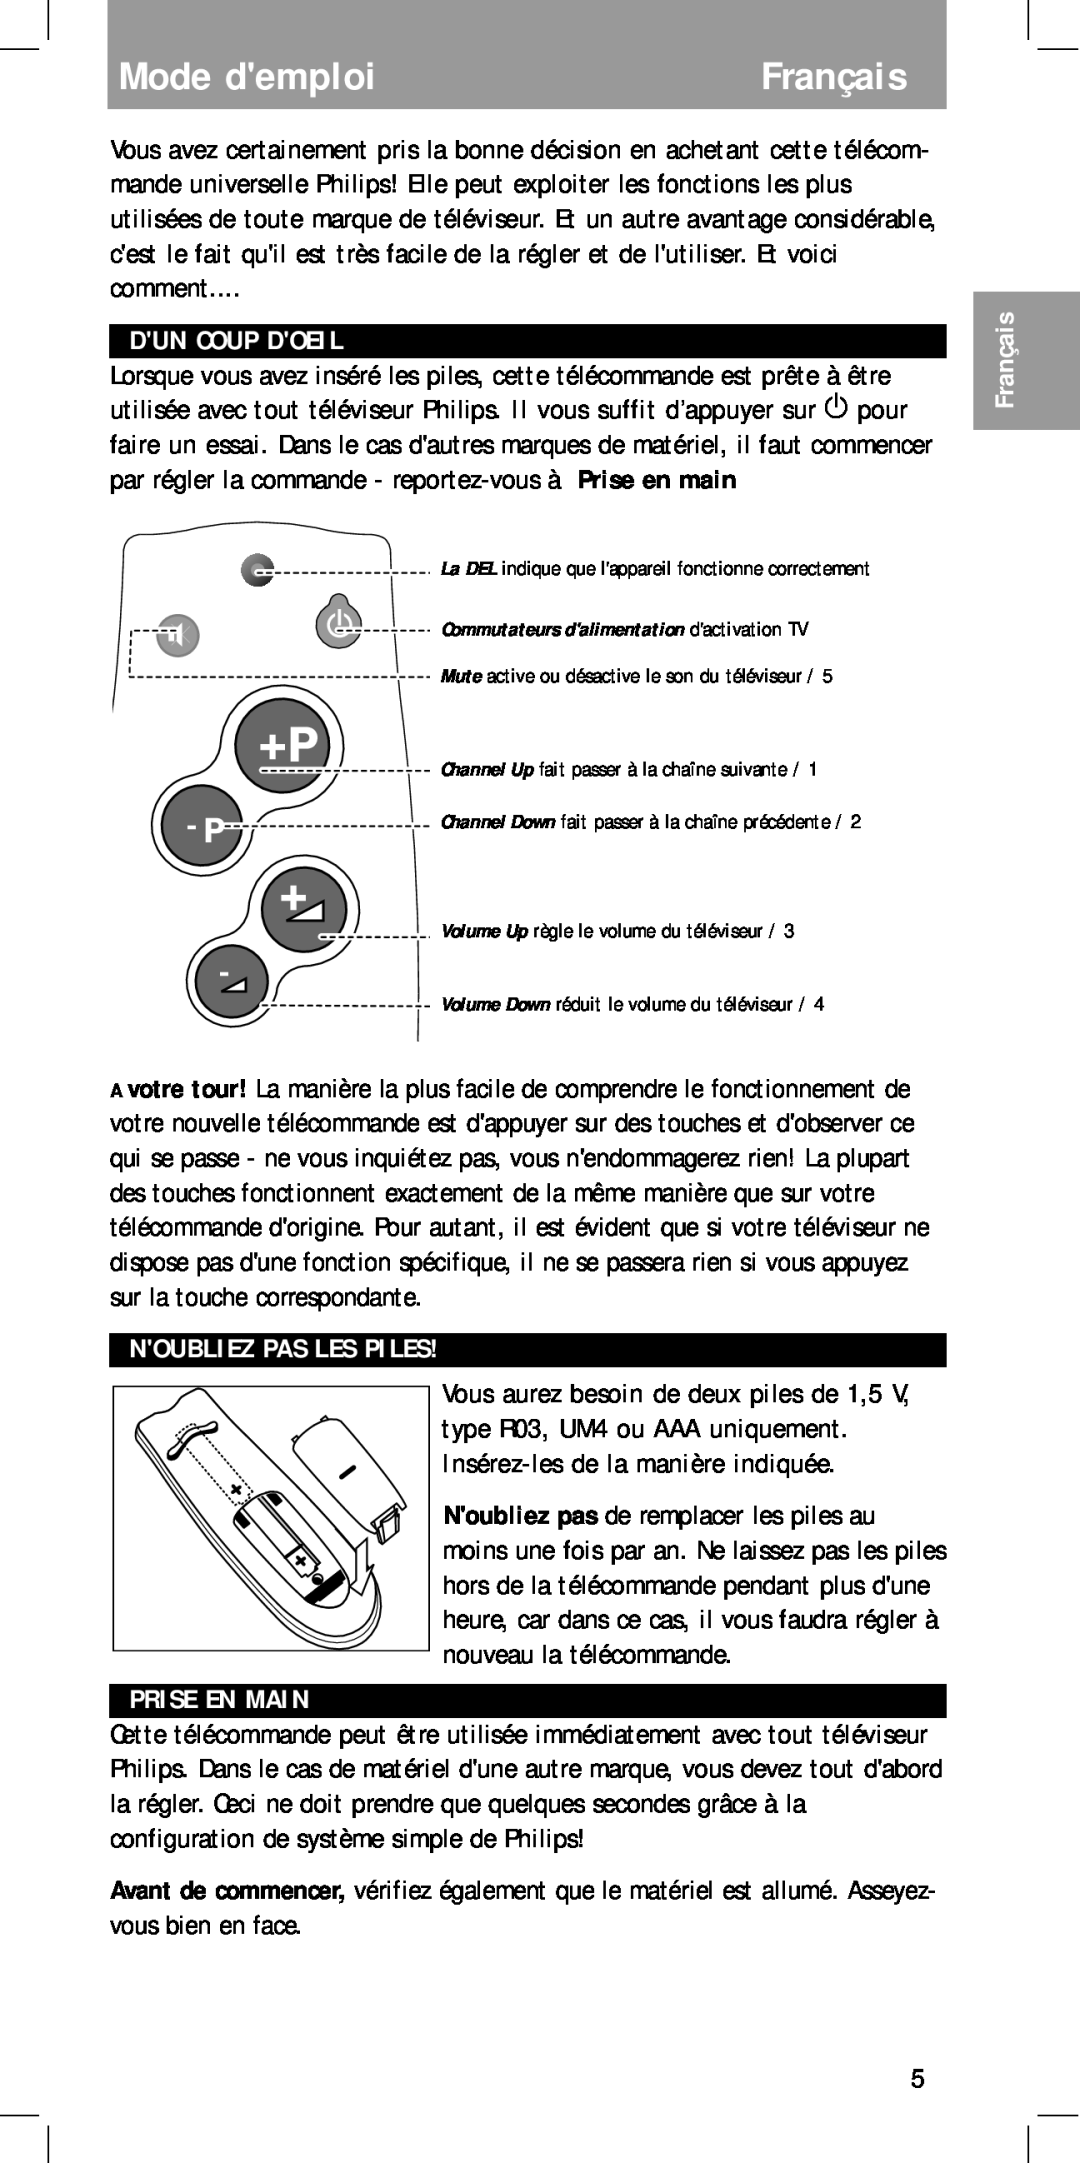 Philips MC-110 manual Mode demploiFrançais, Dun Coup Doeil, Noubliez Pas Les Piles, Prise En Main 